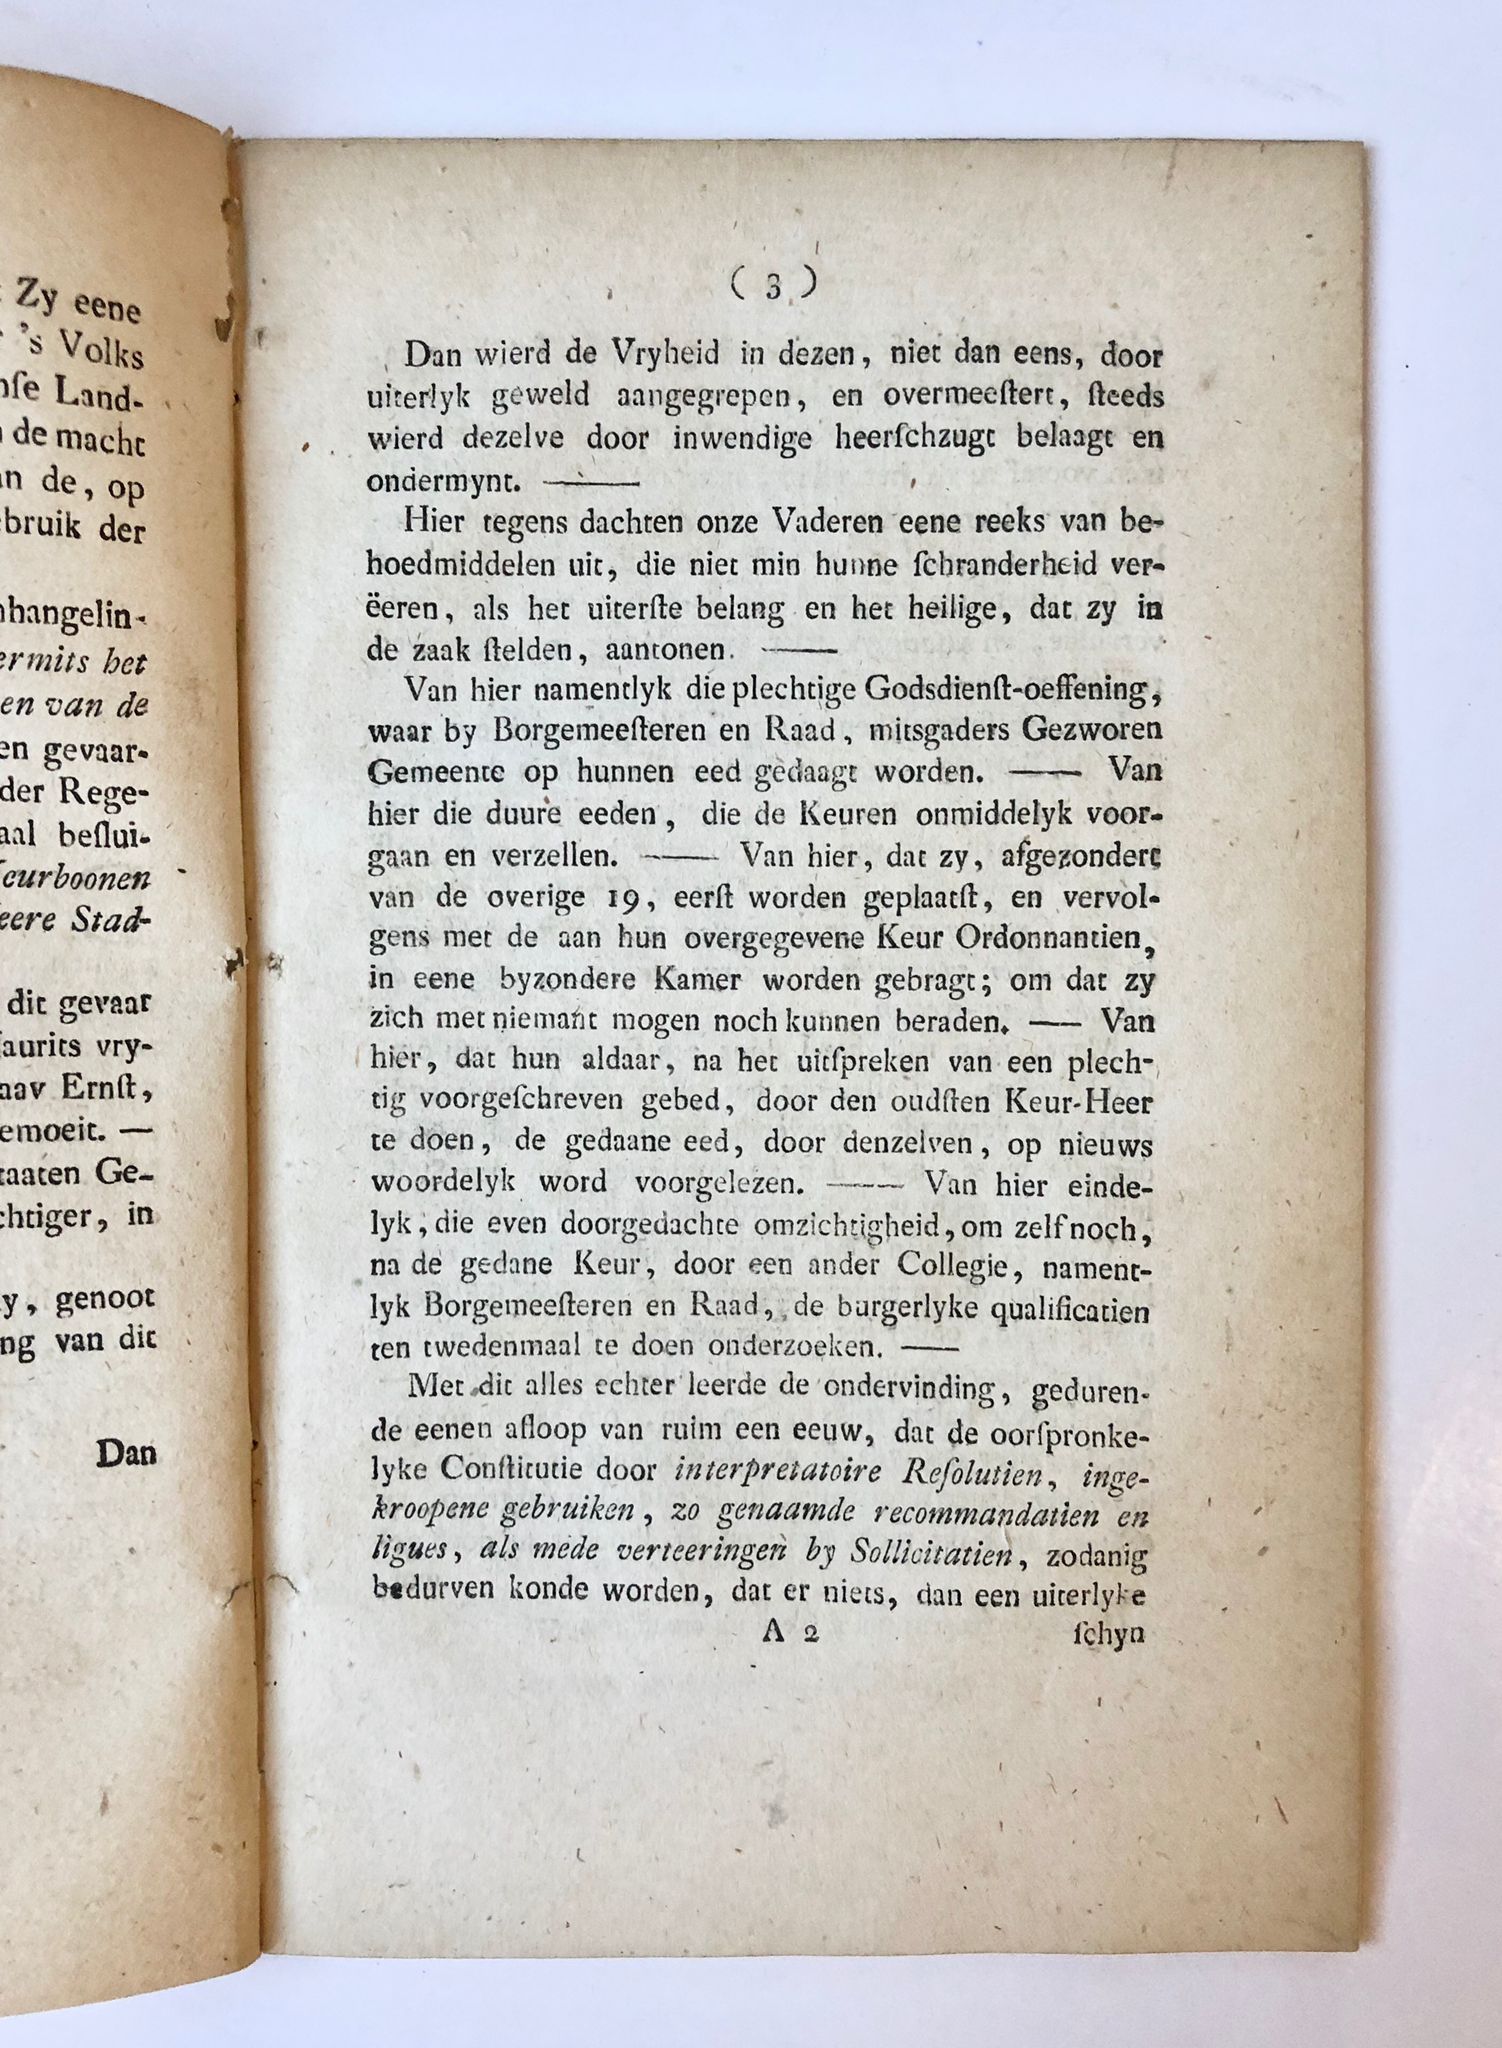 [Groningen [1787]] Edele mogende H. Heeren Borgemeesteren en Raad, Oud en Nieuw, sampt Taalmannen en Gezworen Gemeente, uitmakende den Breden Raad der Stad Groningen!, [s.n, s.l.] [1787], 36 pp.